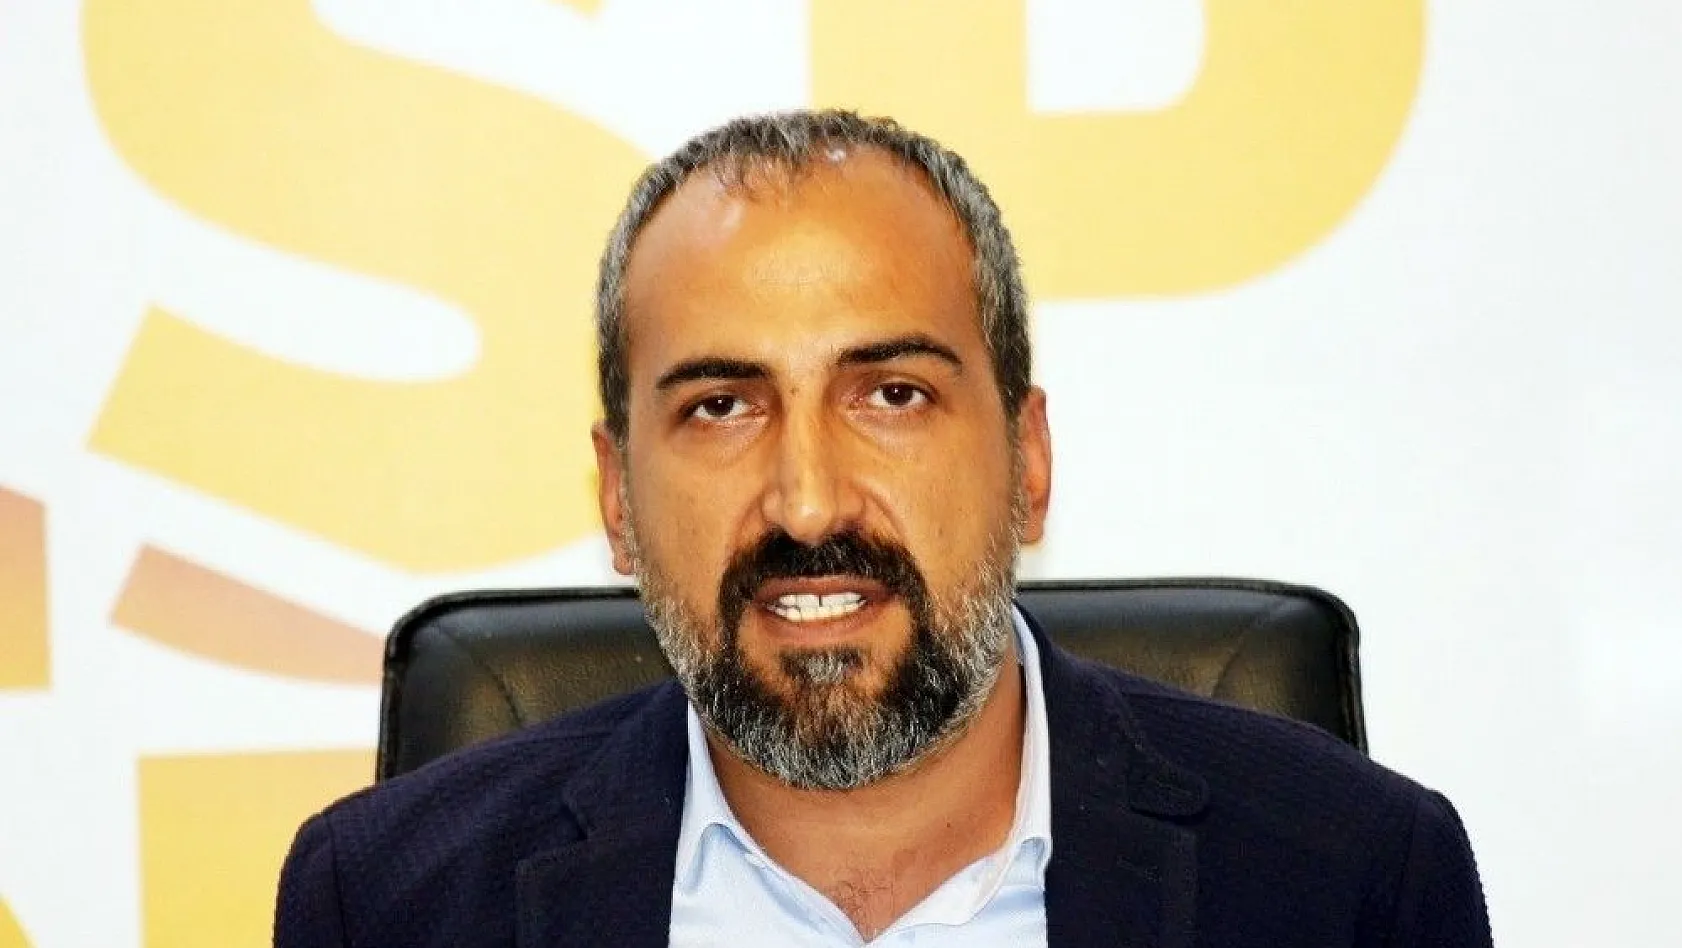 Kayserispor Basın Sözcüsü Mustafa Tokgöz:
